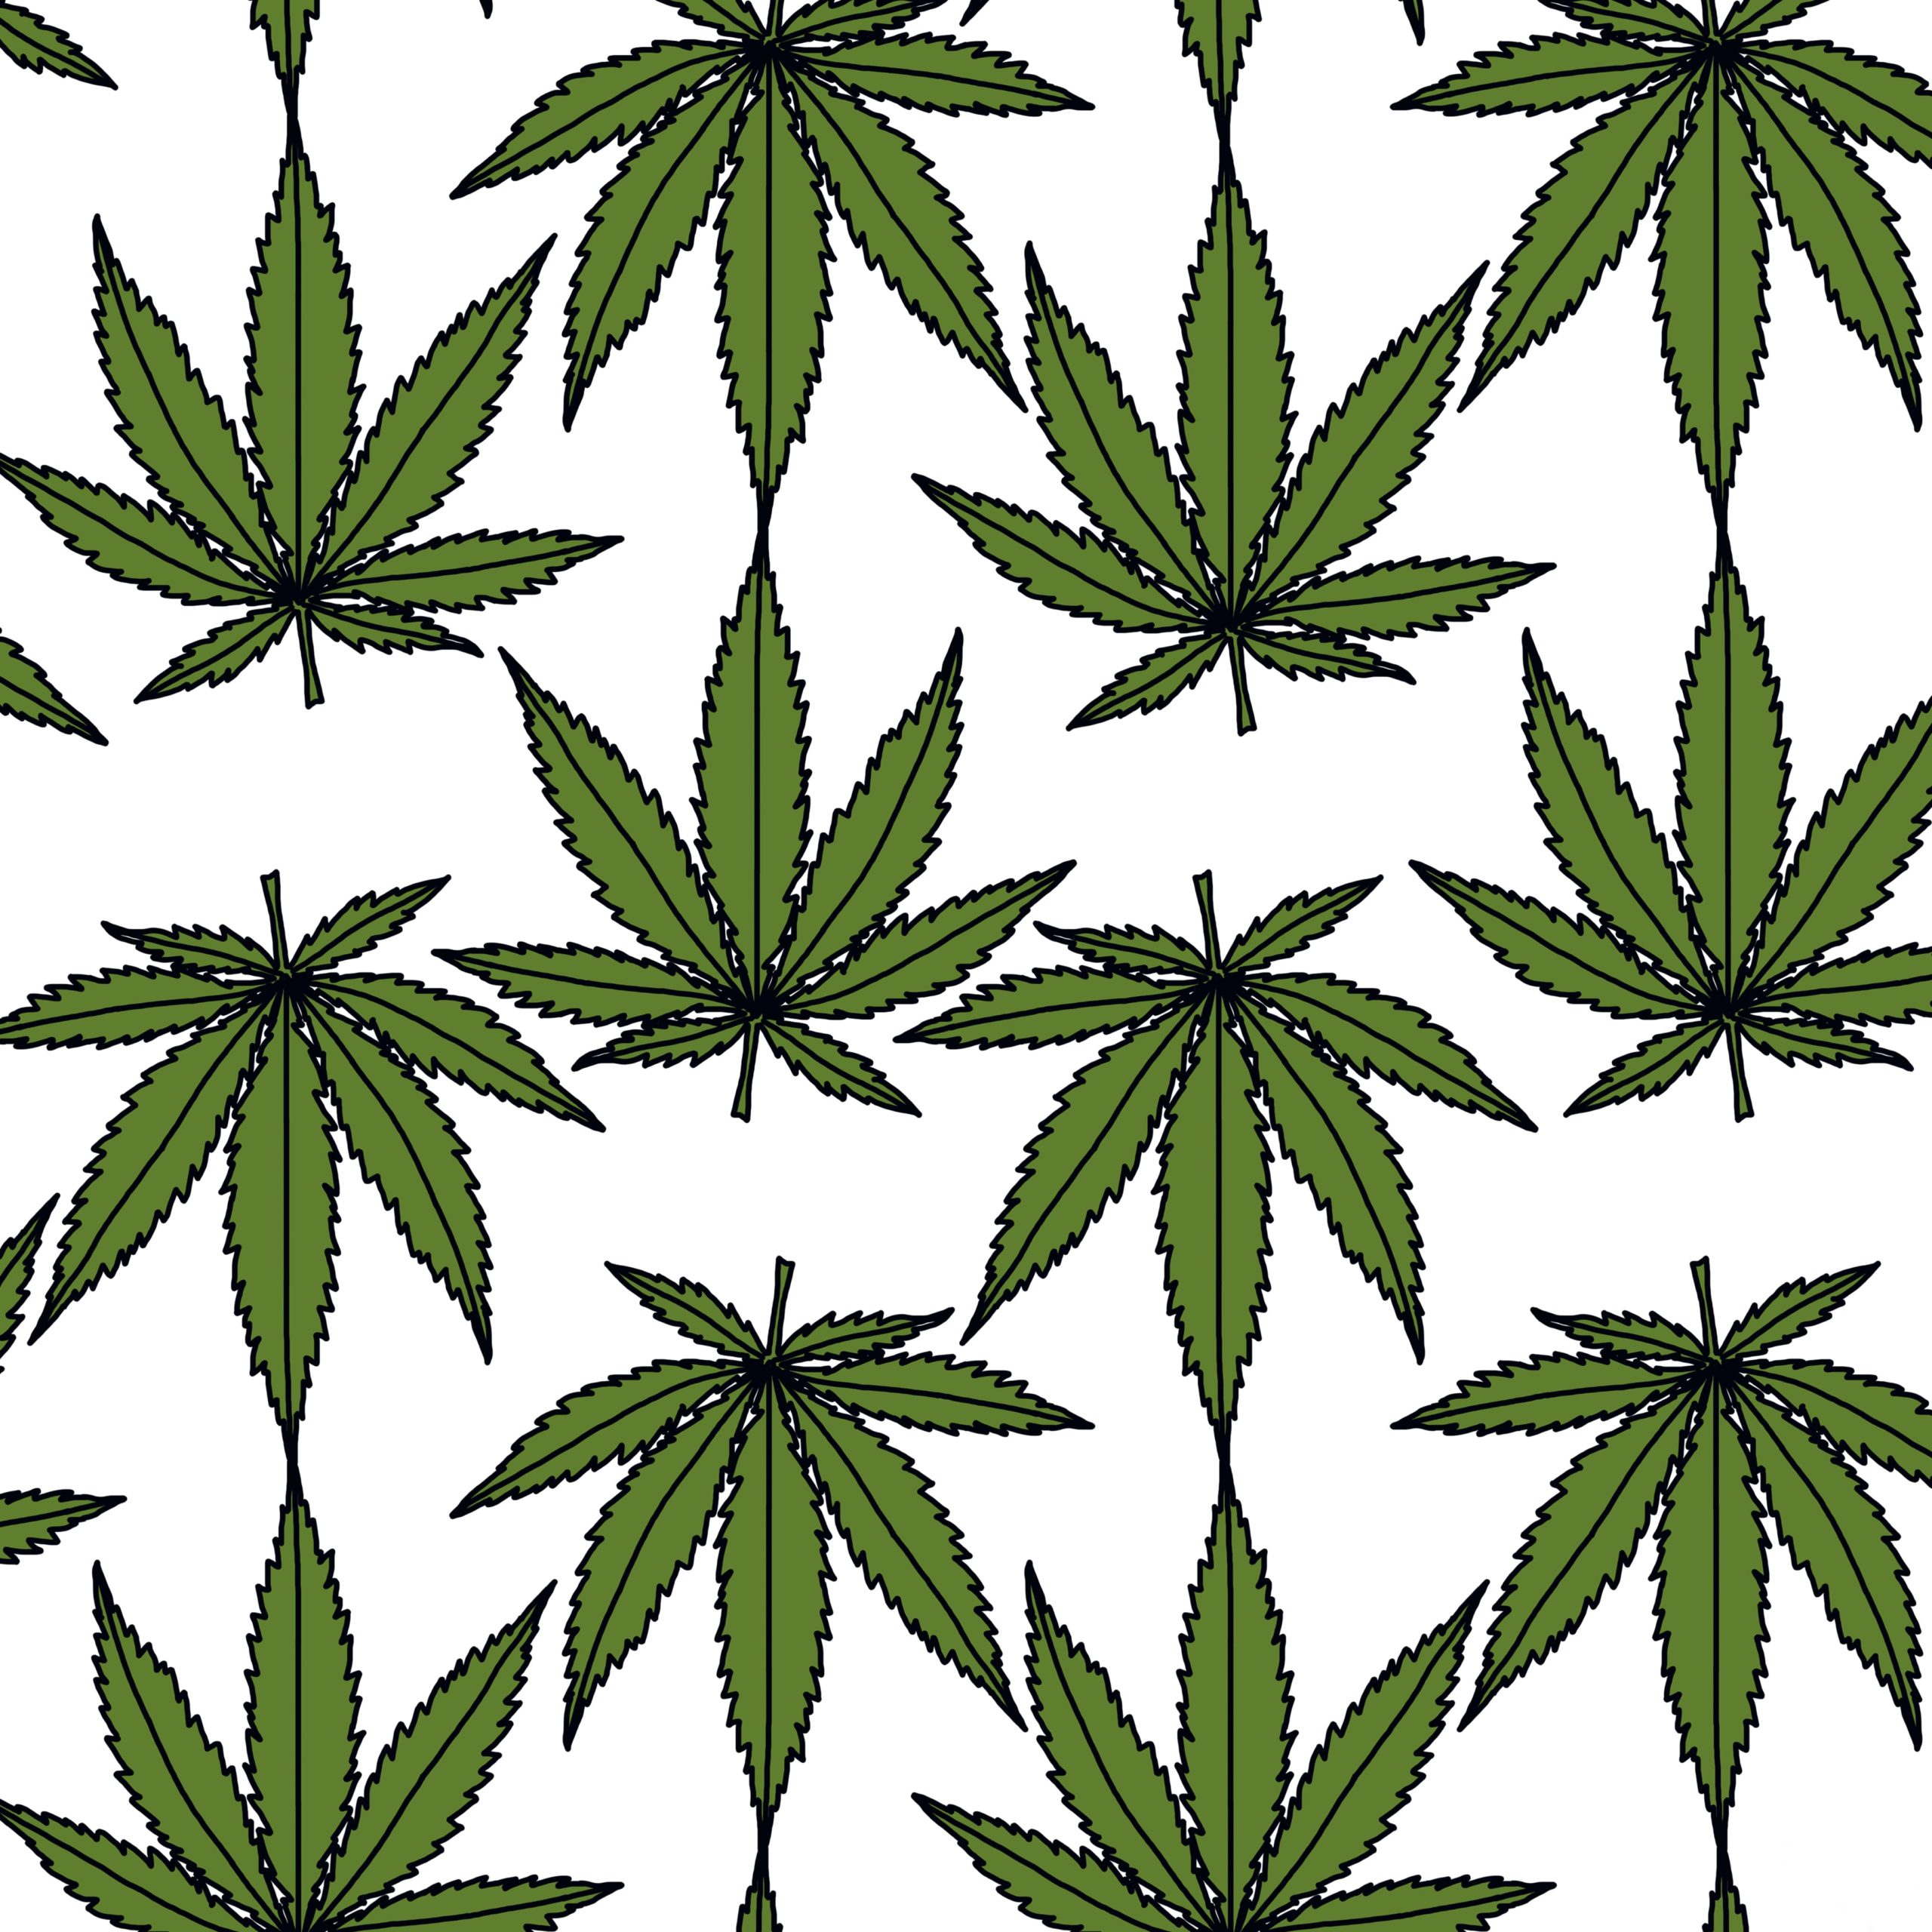 Illustration of Cannabis leaves, cannabis leaf, cannabis plant, pot leaf, weed, medical marijuana, cannabis oil, marijuana herbal cannabis, cannabis sativa.